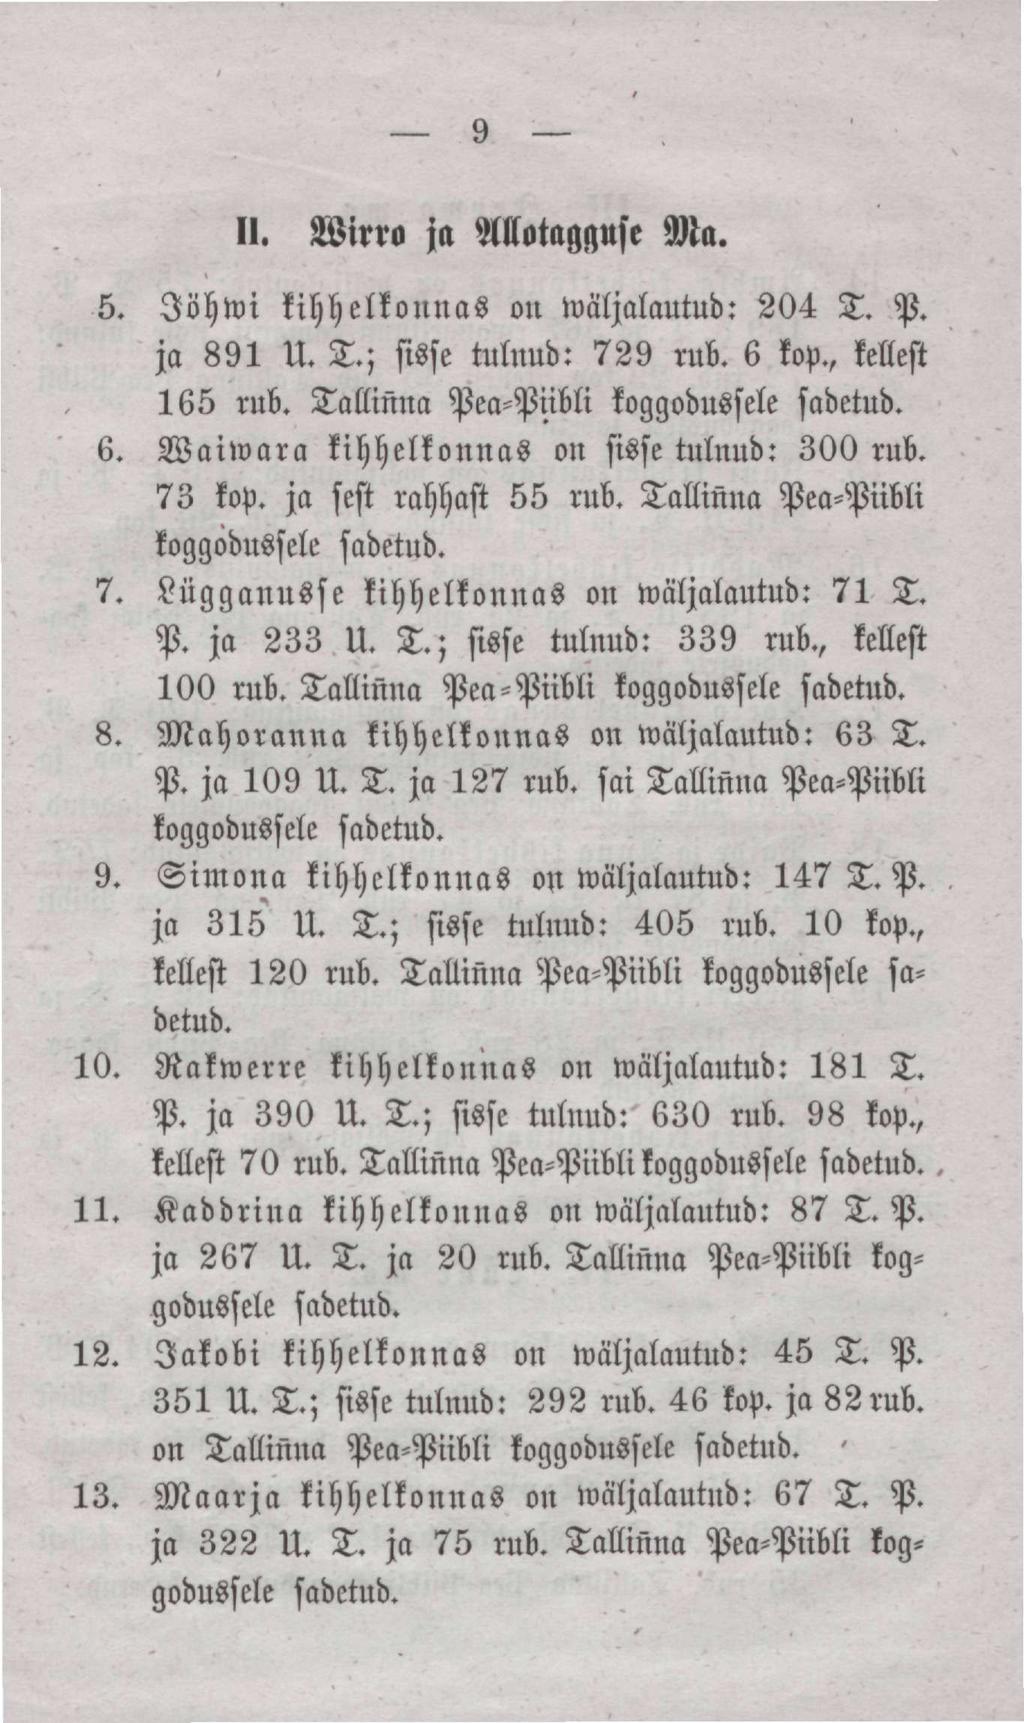 9 II. Wirro ja MotagMse Ma. 5. Jõhwi kihhelkonnas on wäljalautud: 204 T. P. ja 891 U..; sisse tulnud: 729 rub. 6 kop., kellest 165 rub. Tallinna Pea-Piibli koggodusale 6.